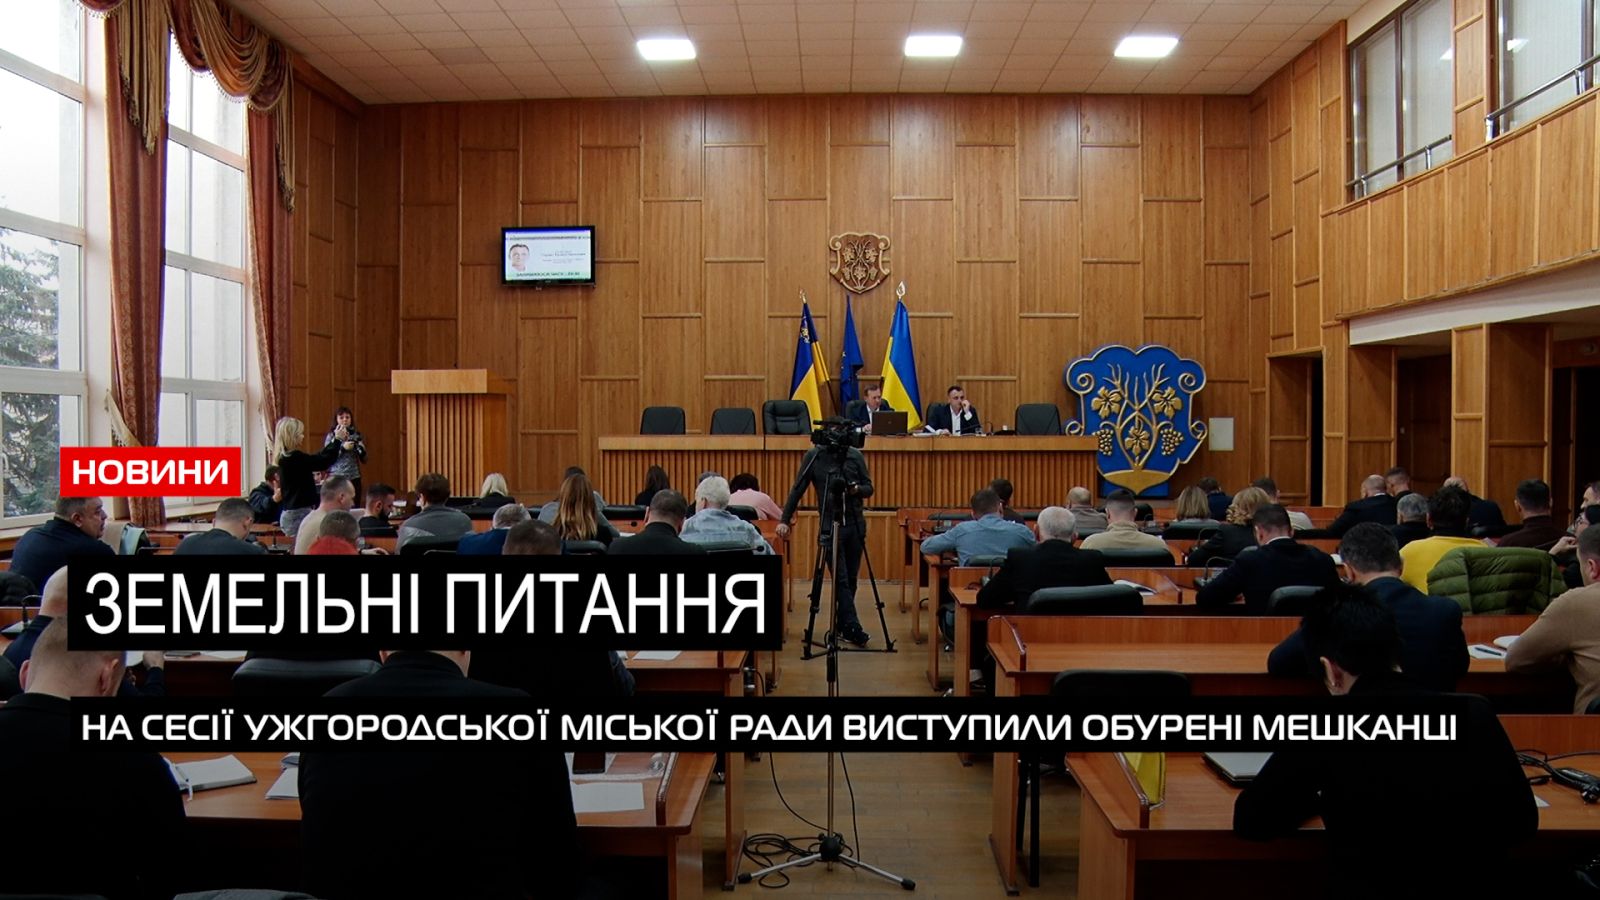  Земельні рішення: в Ужгородській міській раді відбулося сесійне засідання (ВІДЕО) 0